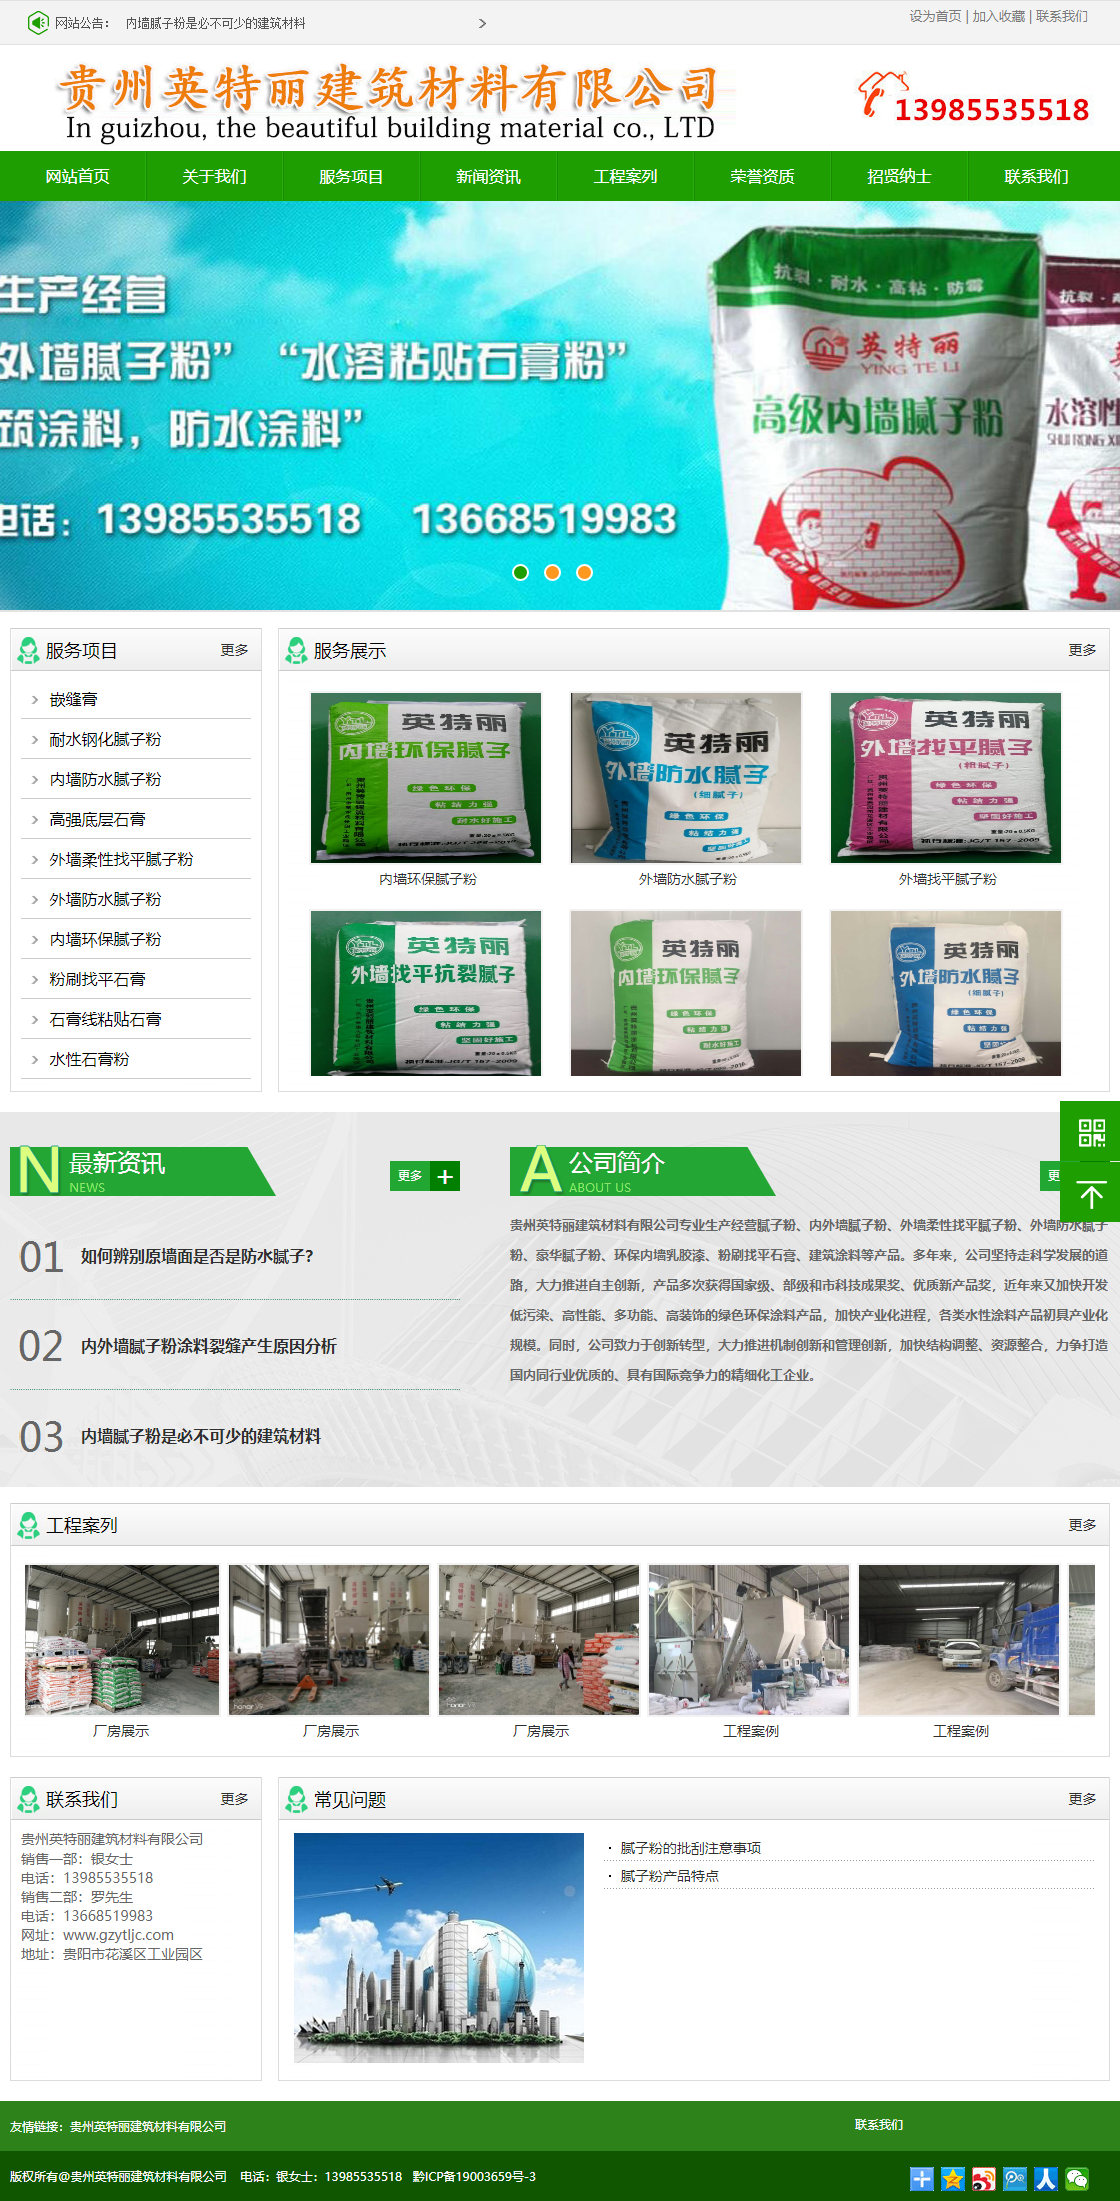 贵州英特丽建筑材料有限公司网站案例